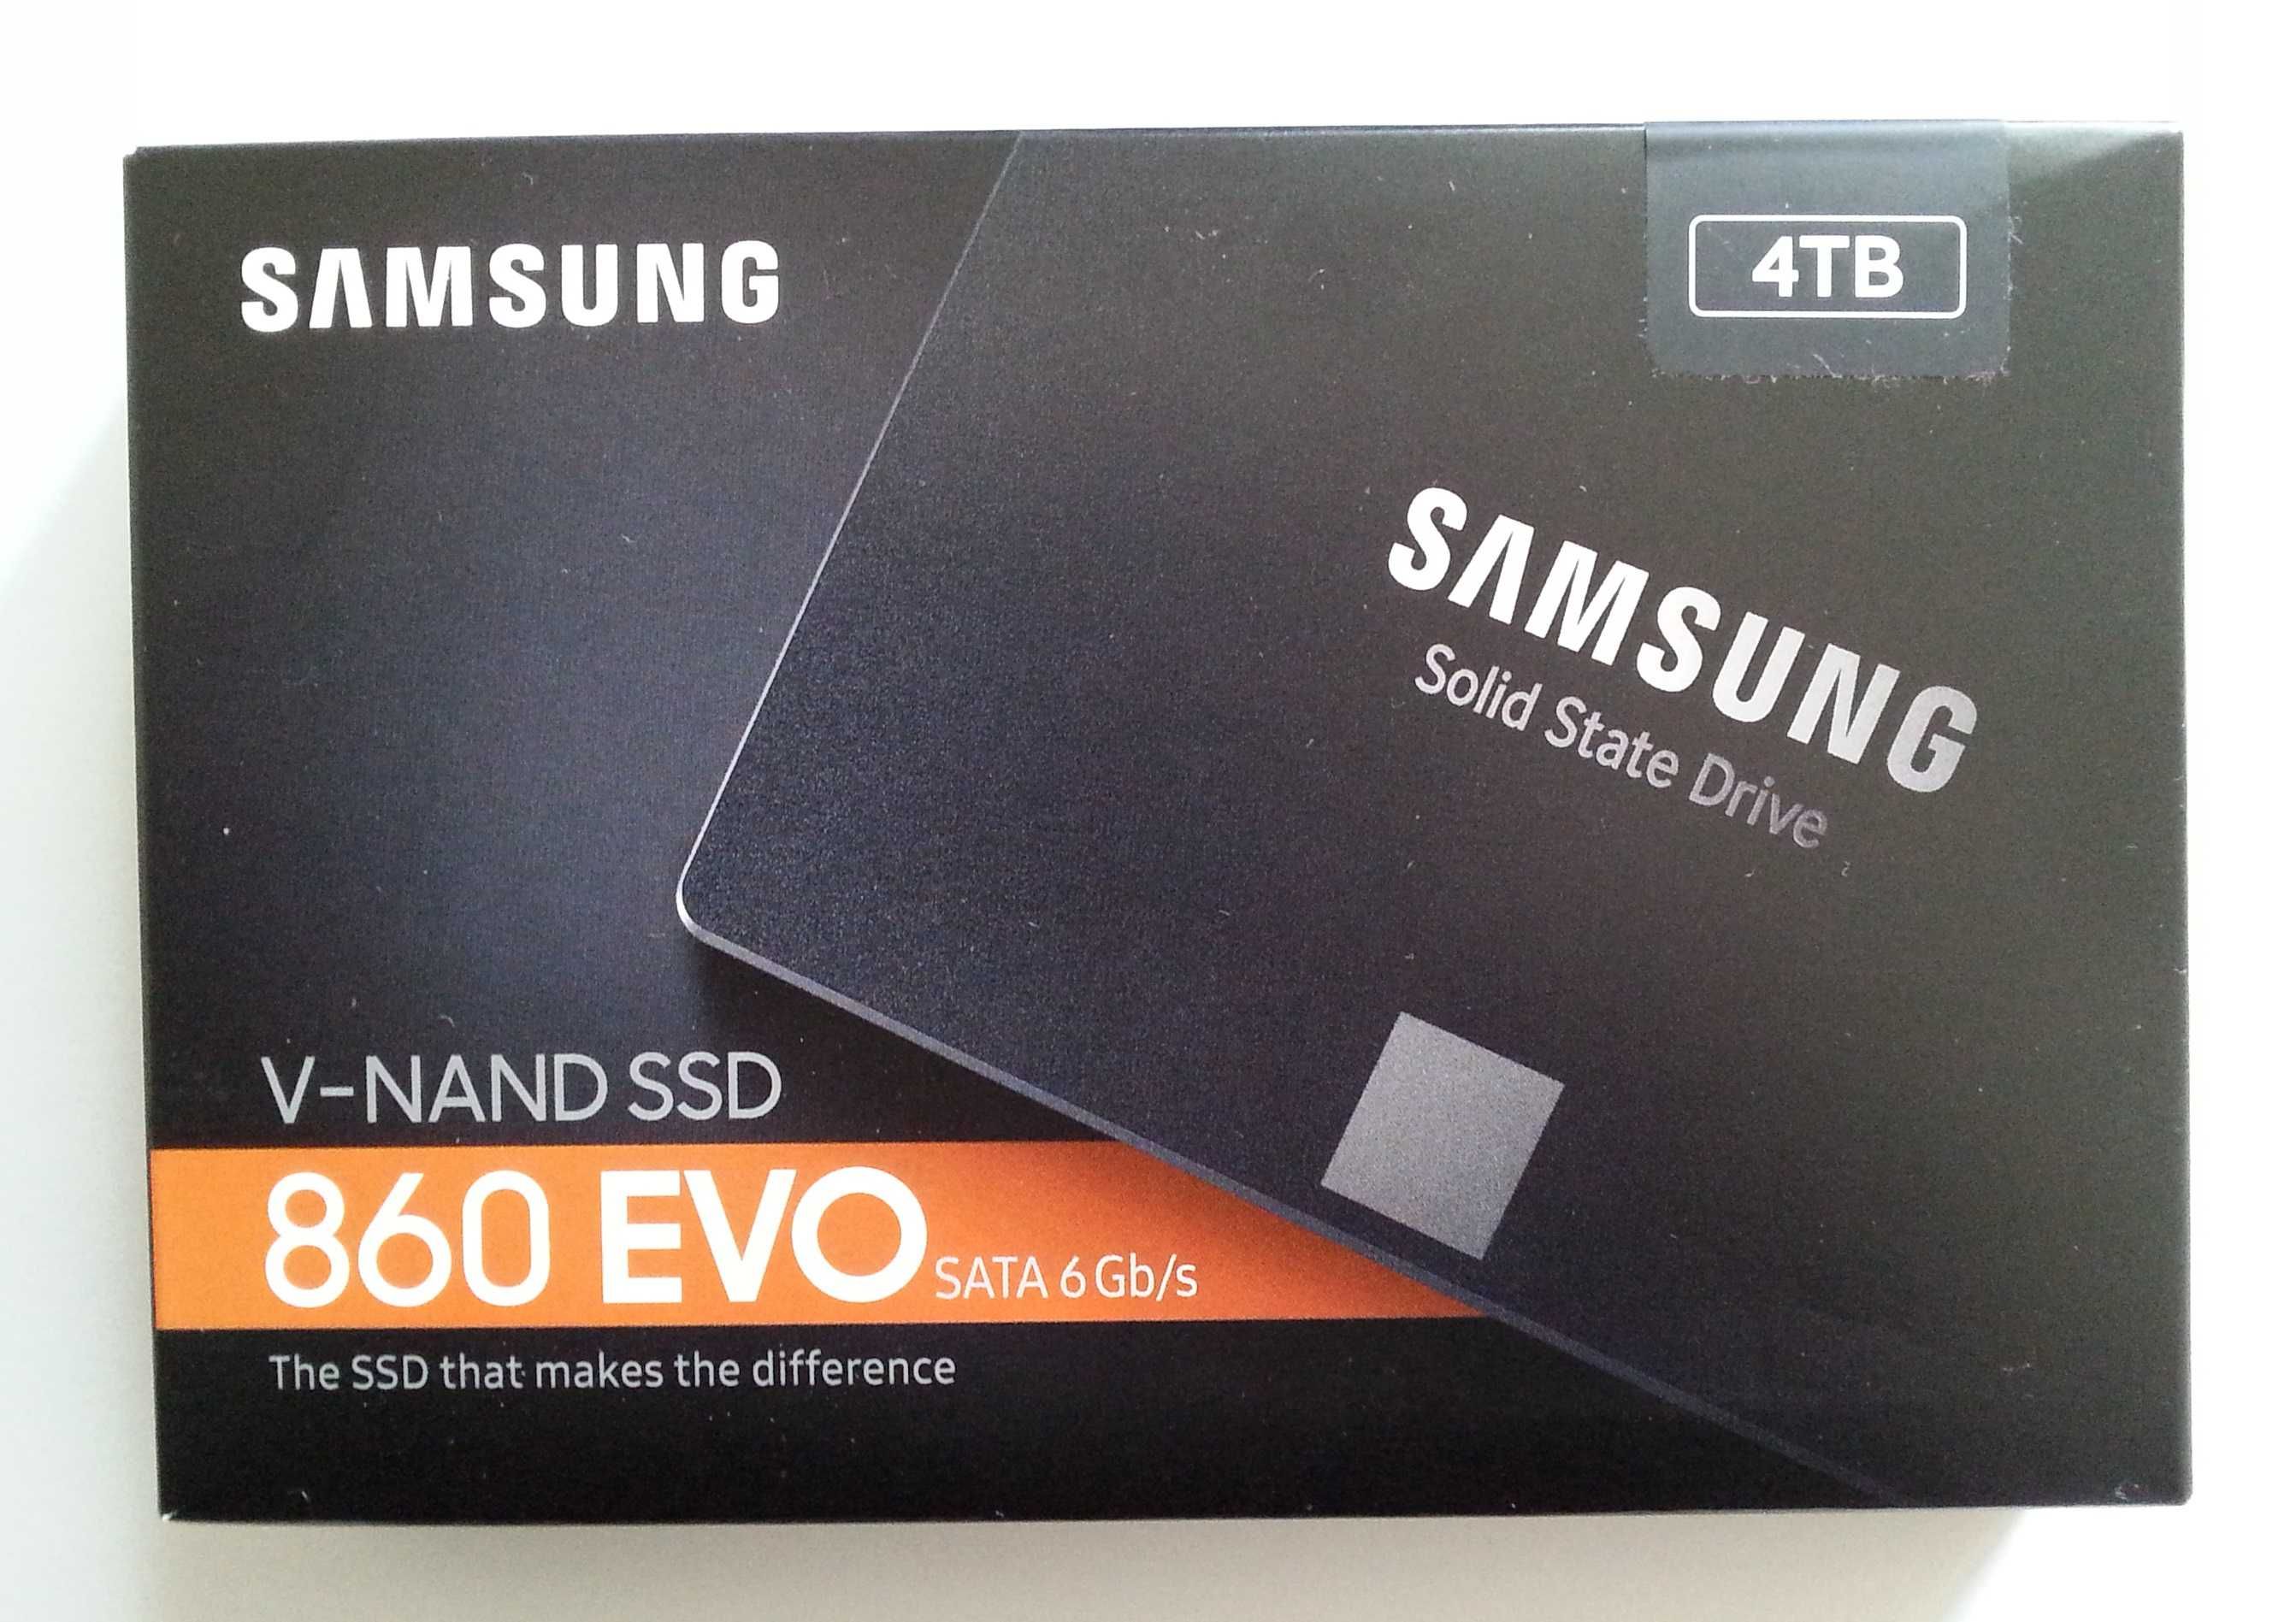 Samsung, nowy,500gb-dysk ssd.Inne modele foto.